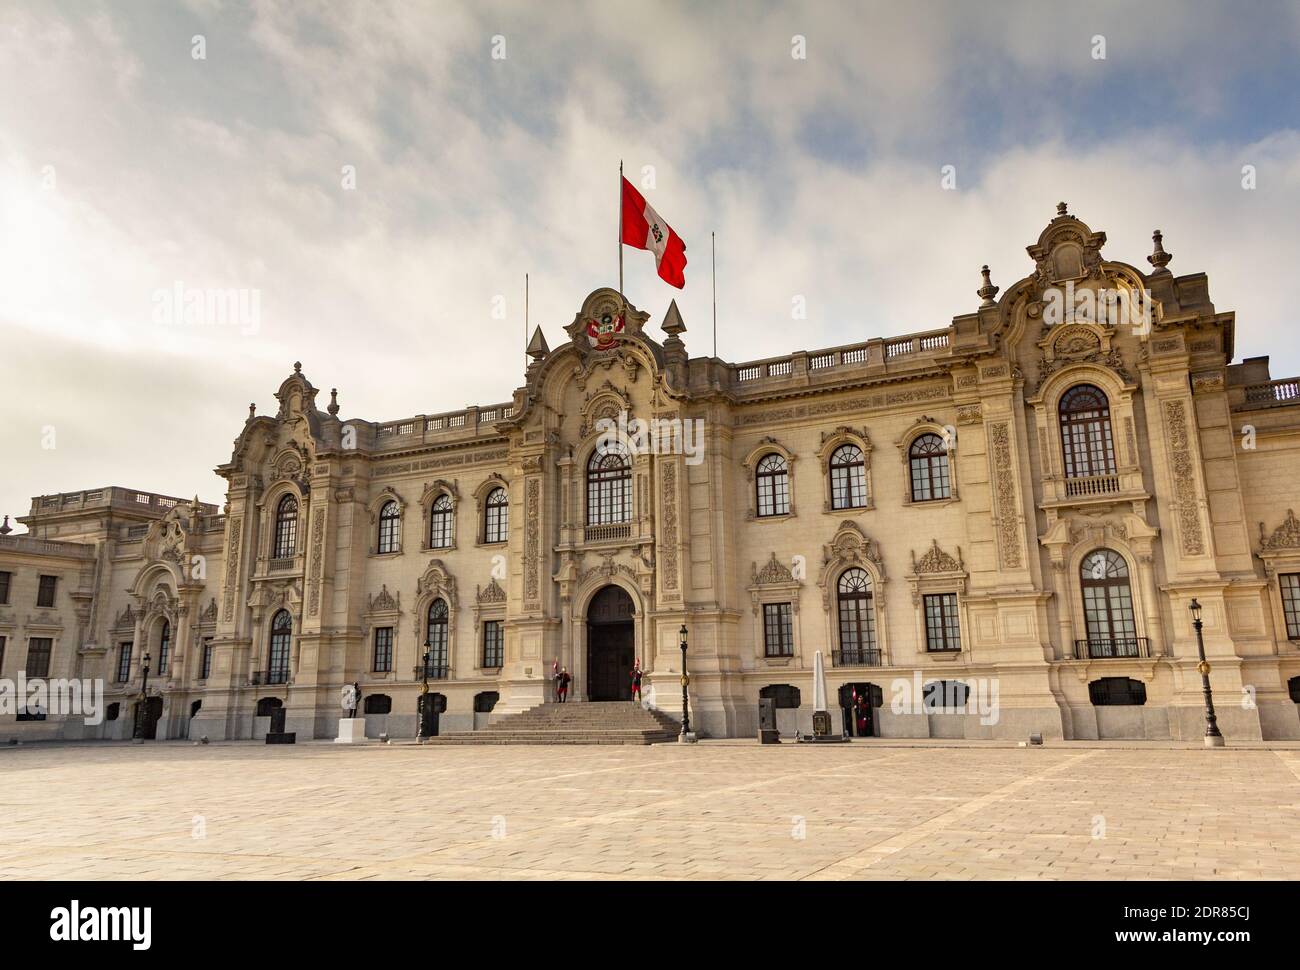 Lima, Pérou - 19 juin 2015 : le Palais du Gouvernement, également connu sous le nom de Maison de Pizarro, est le siège de l'exécutif du Gouvernement péruvien Banque D'Images